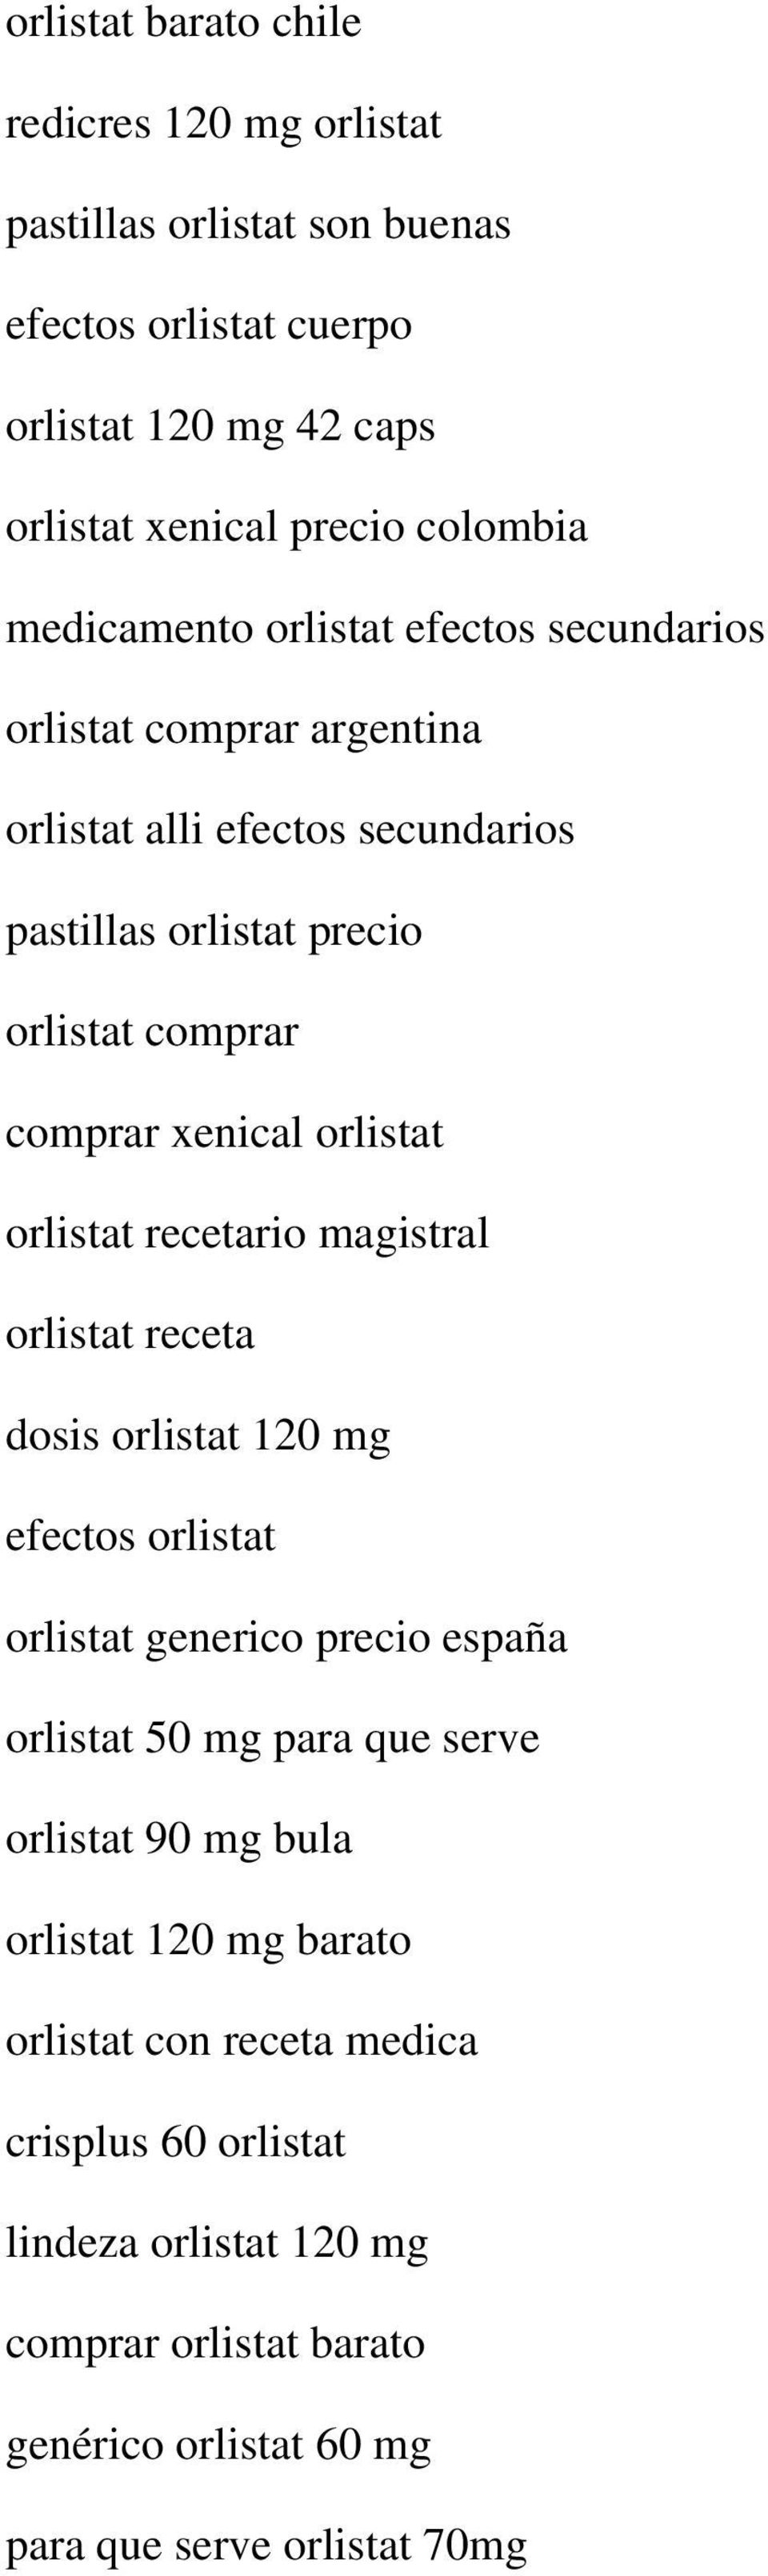 orlistat orlistat recetario magistral orlistat receta dosis orlistat 120 mg efectos orlistat orlistat generico precio españa orlistat 50 mg para que serve orlistat 90